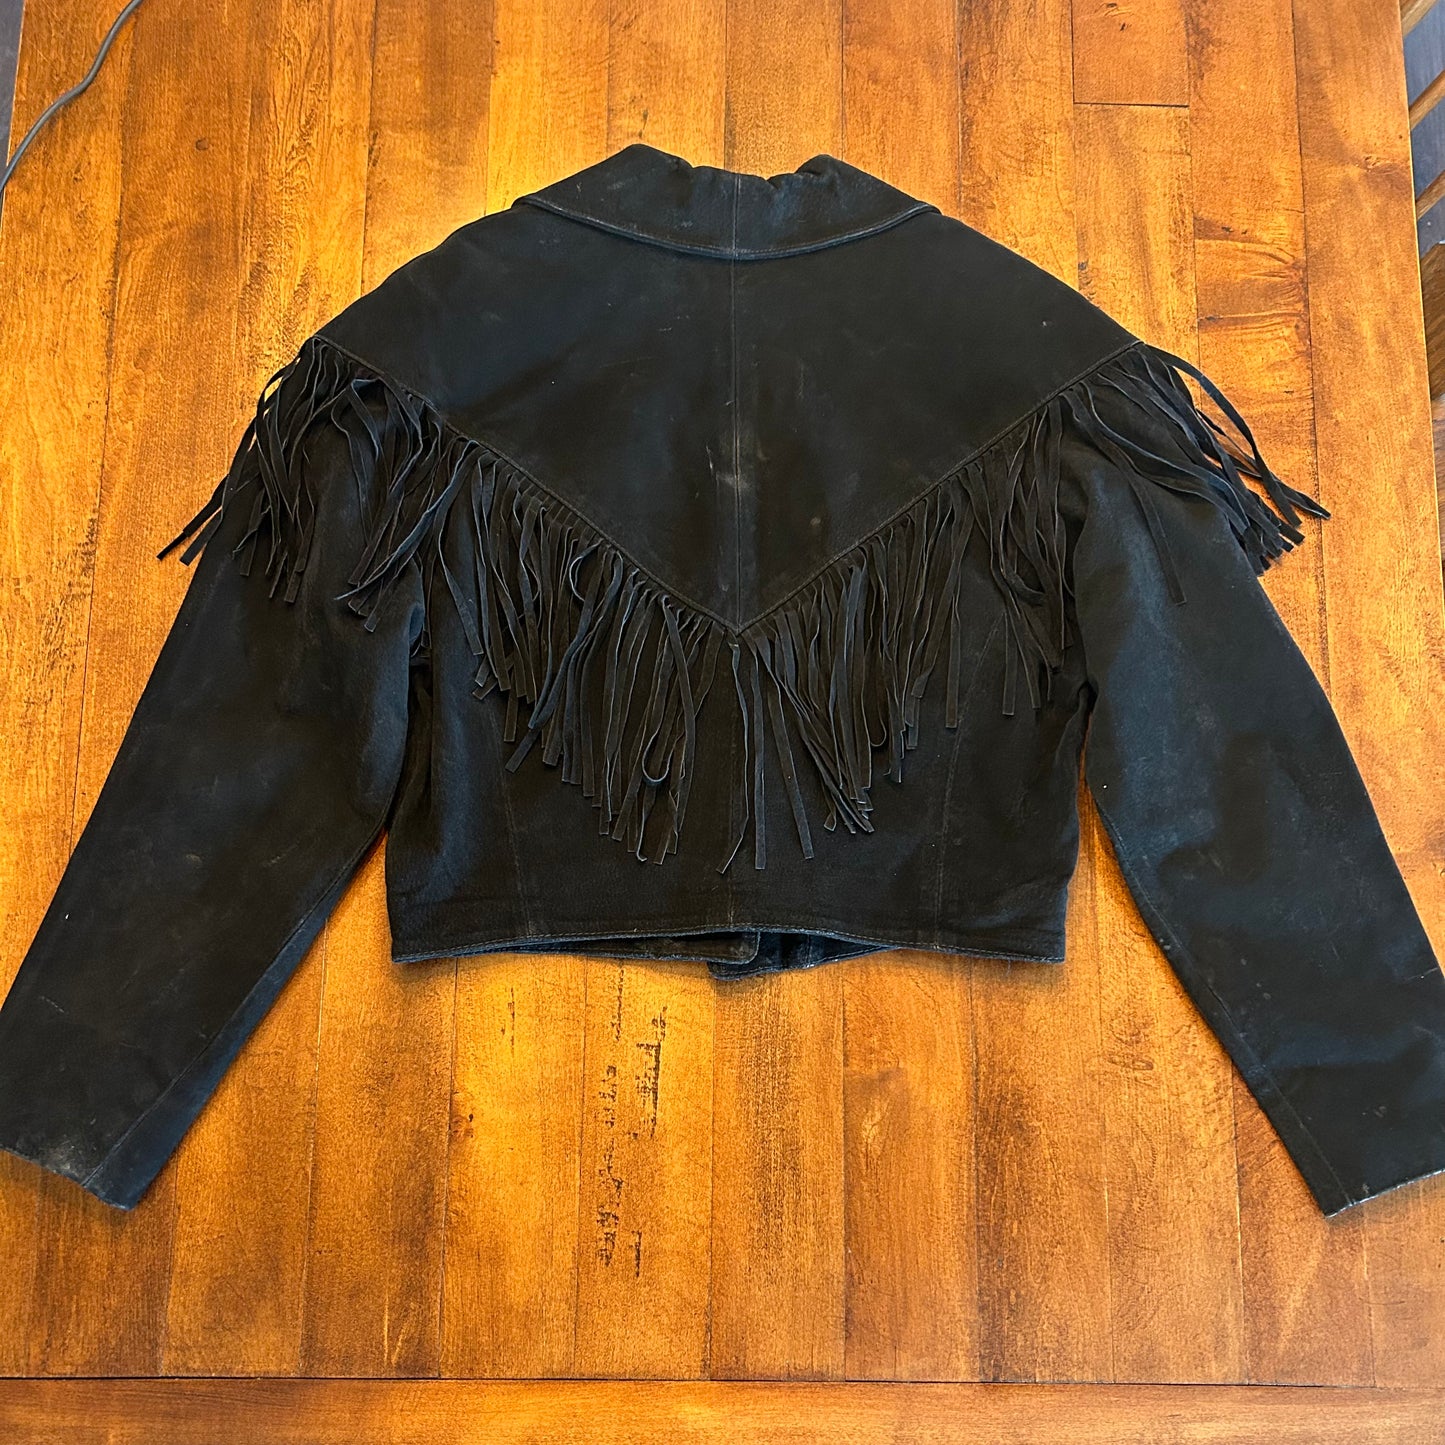 Vintage Adler Genuine Leather Jacket with Fringe Size M